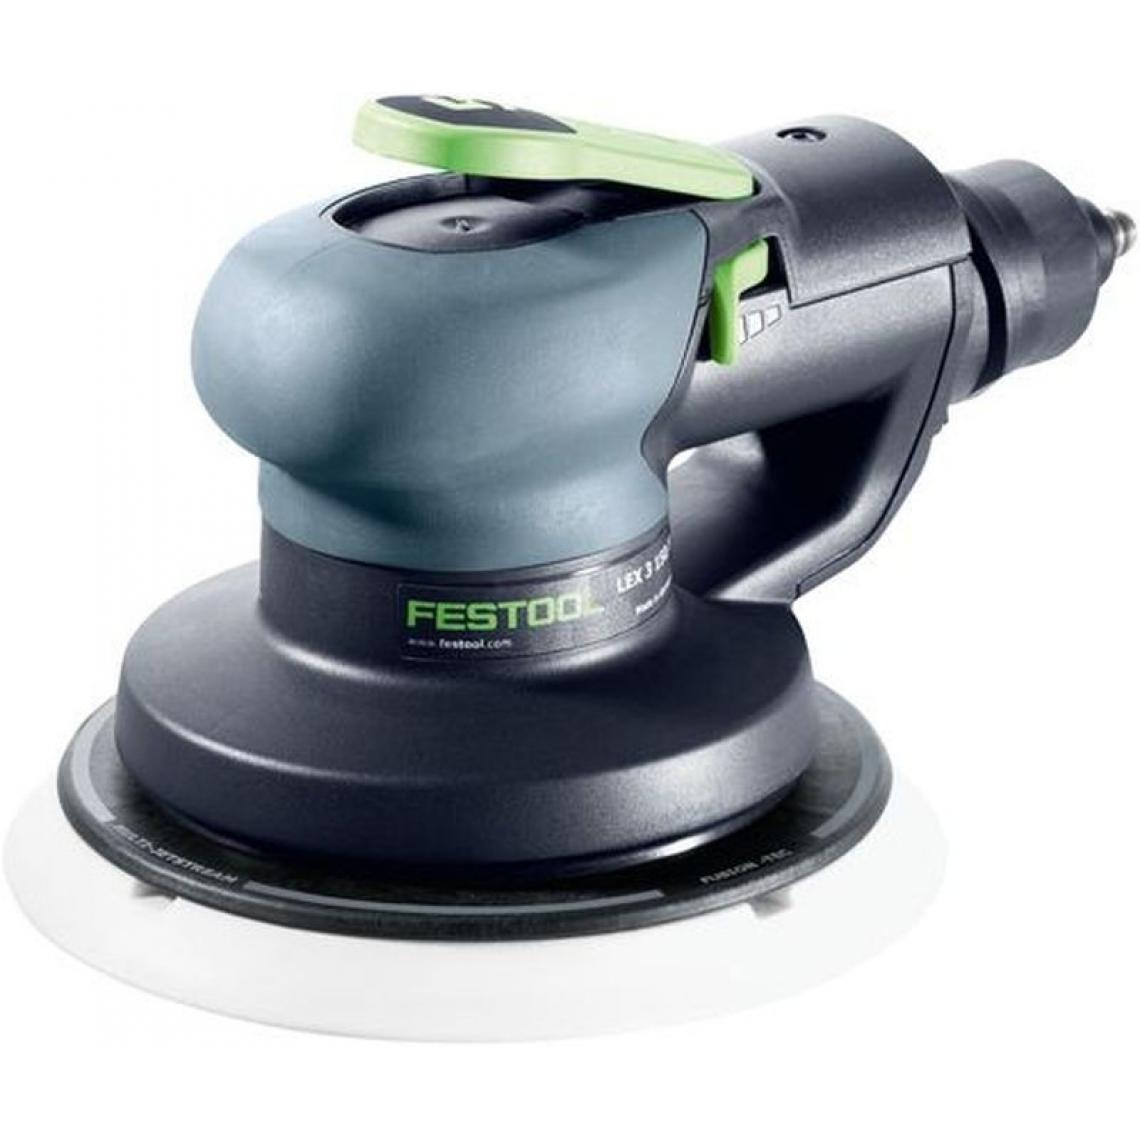 Festool - Ponceuse excentrique pneumatique FESTOOL LEX 3 150/7 - 575077 - Accessoires vissage, perçage